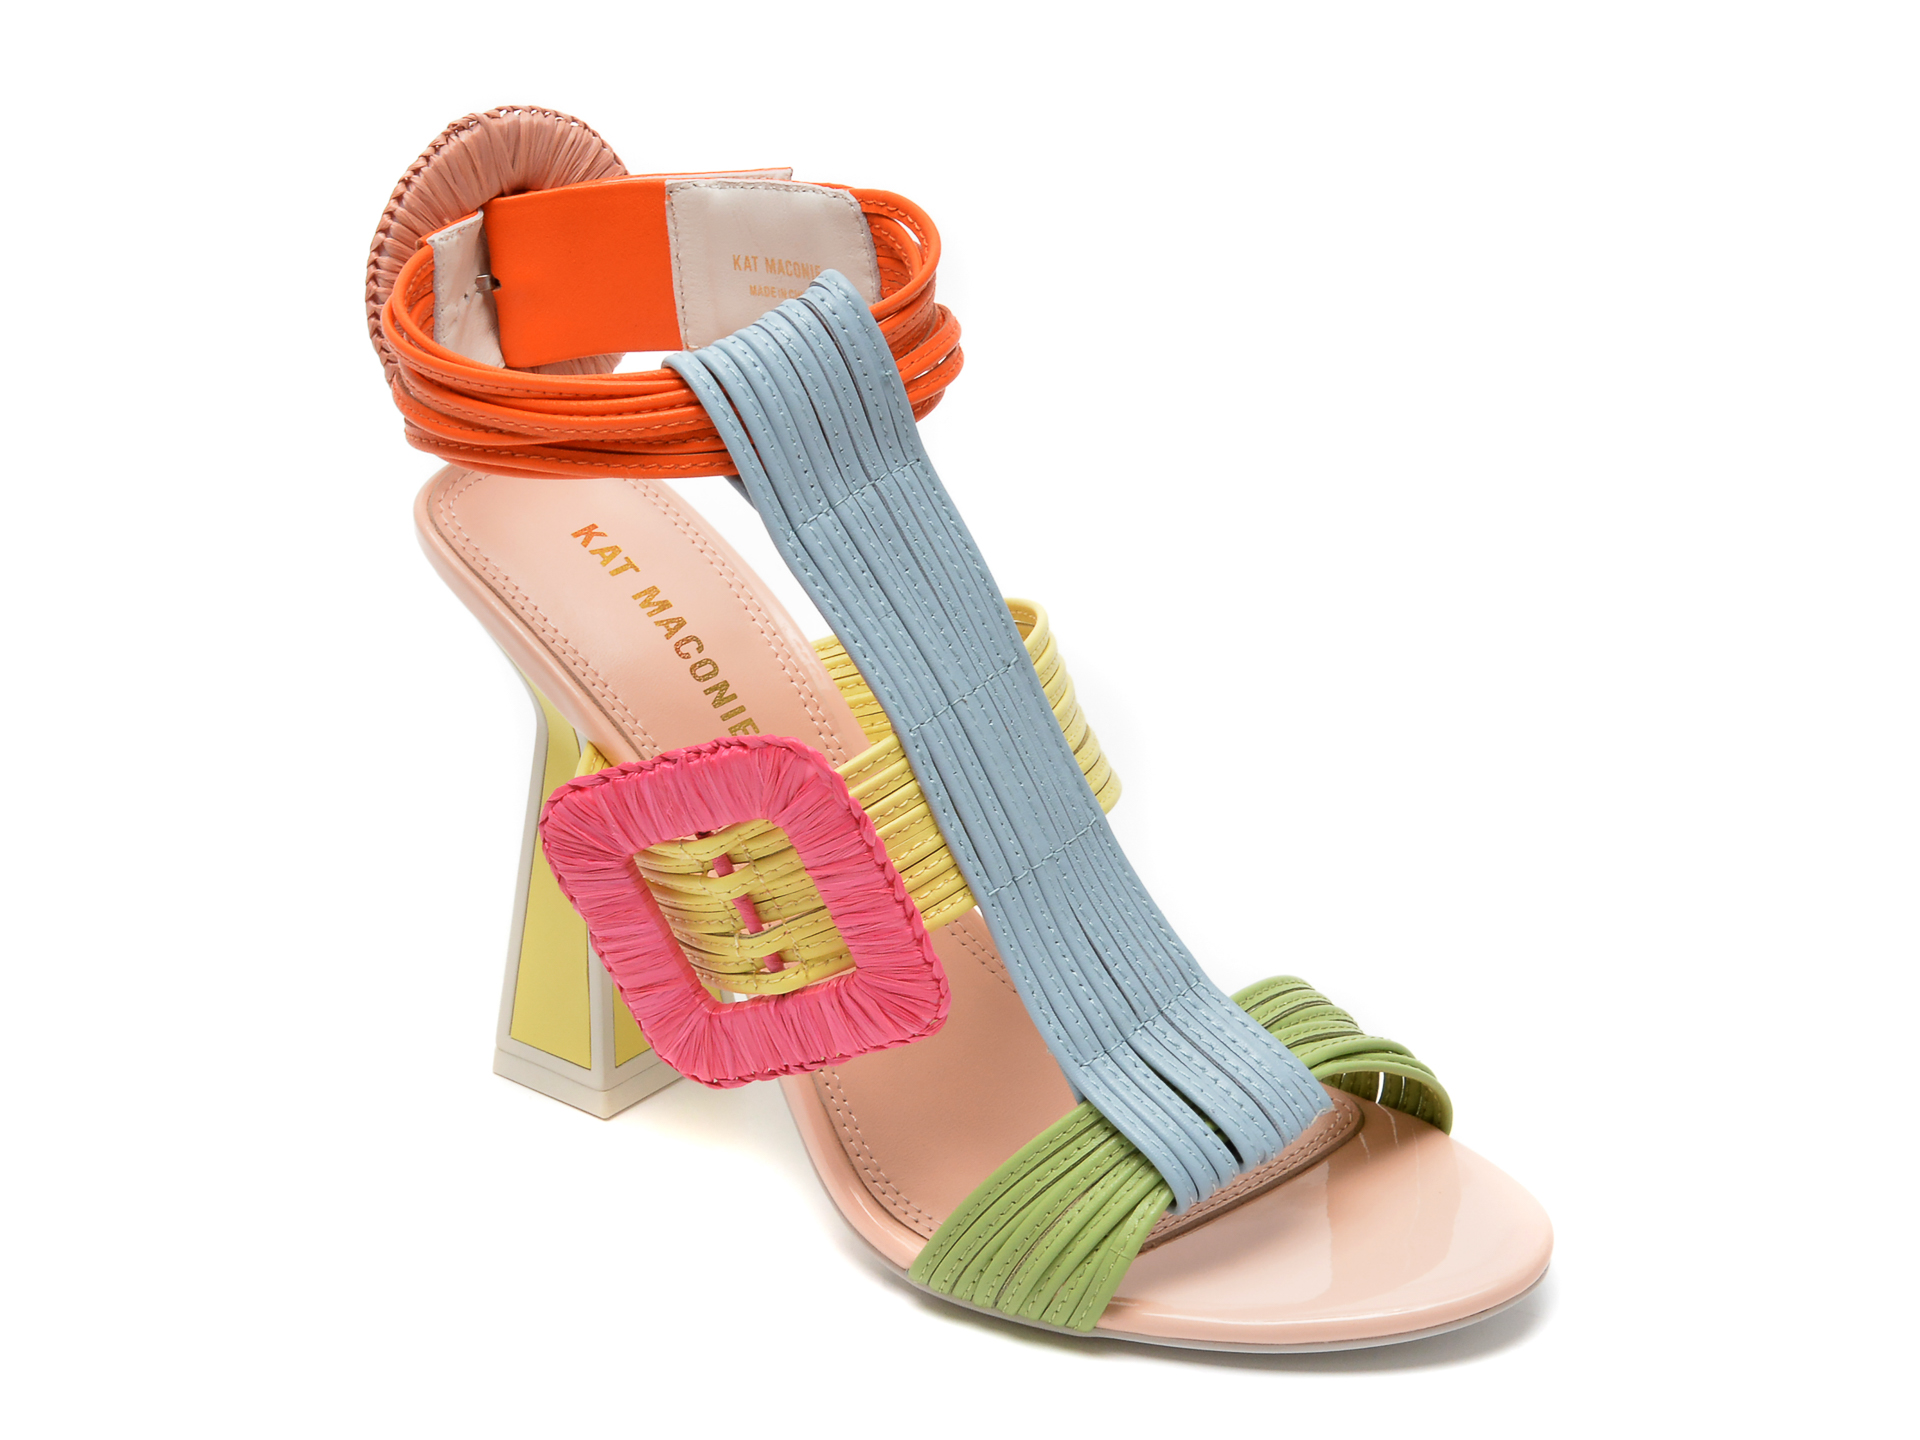 Sandale KAT MACONIE FOR EPICA multicolore, DELIZ, din piele naturala /femei/sandale